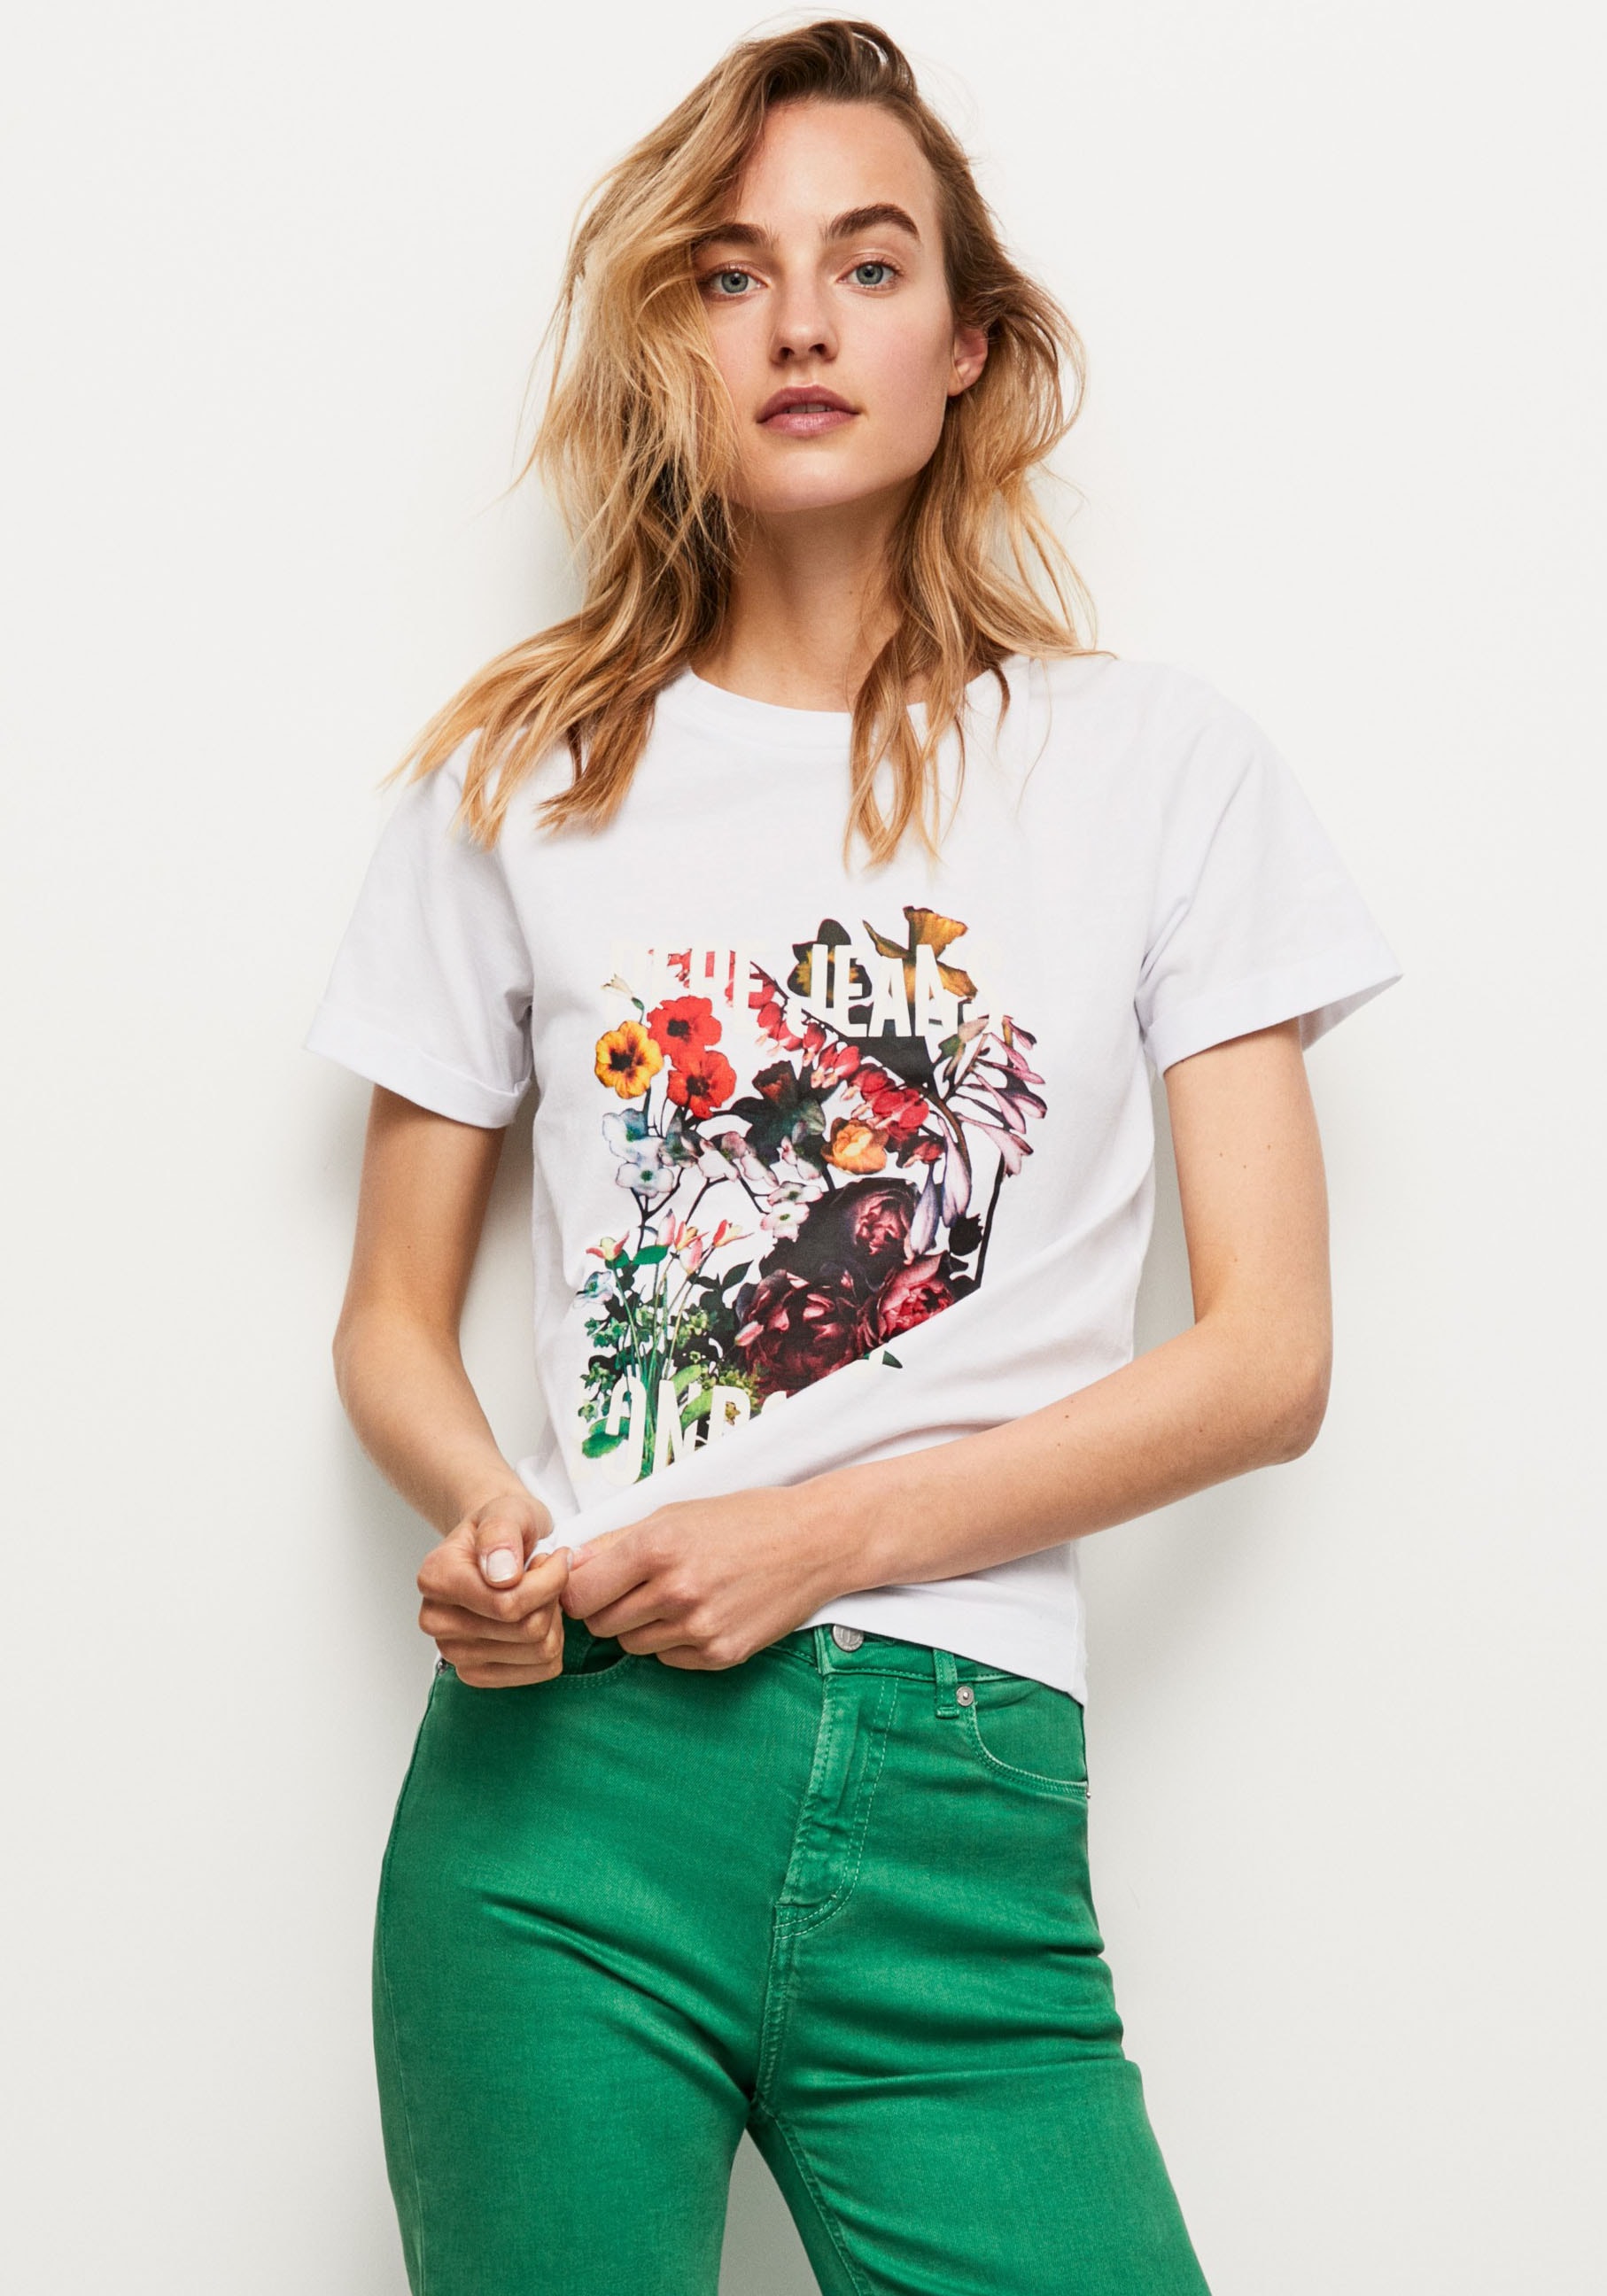 Pepe Jeans in online tollem Frontprint bei und oversized bestellen T-Shirt, Passform markentypischem Jelmoli-Versand Schweiz mit